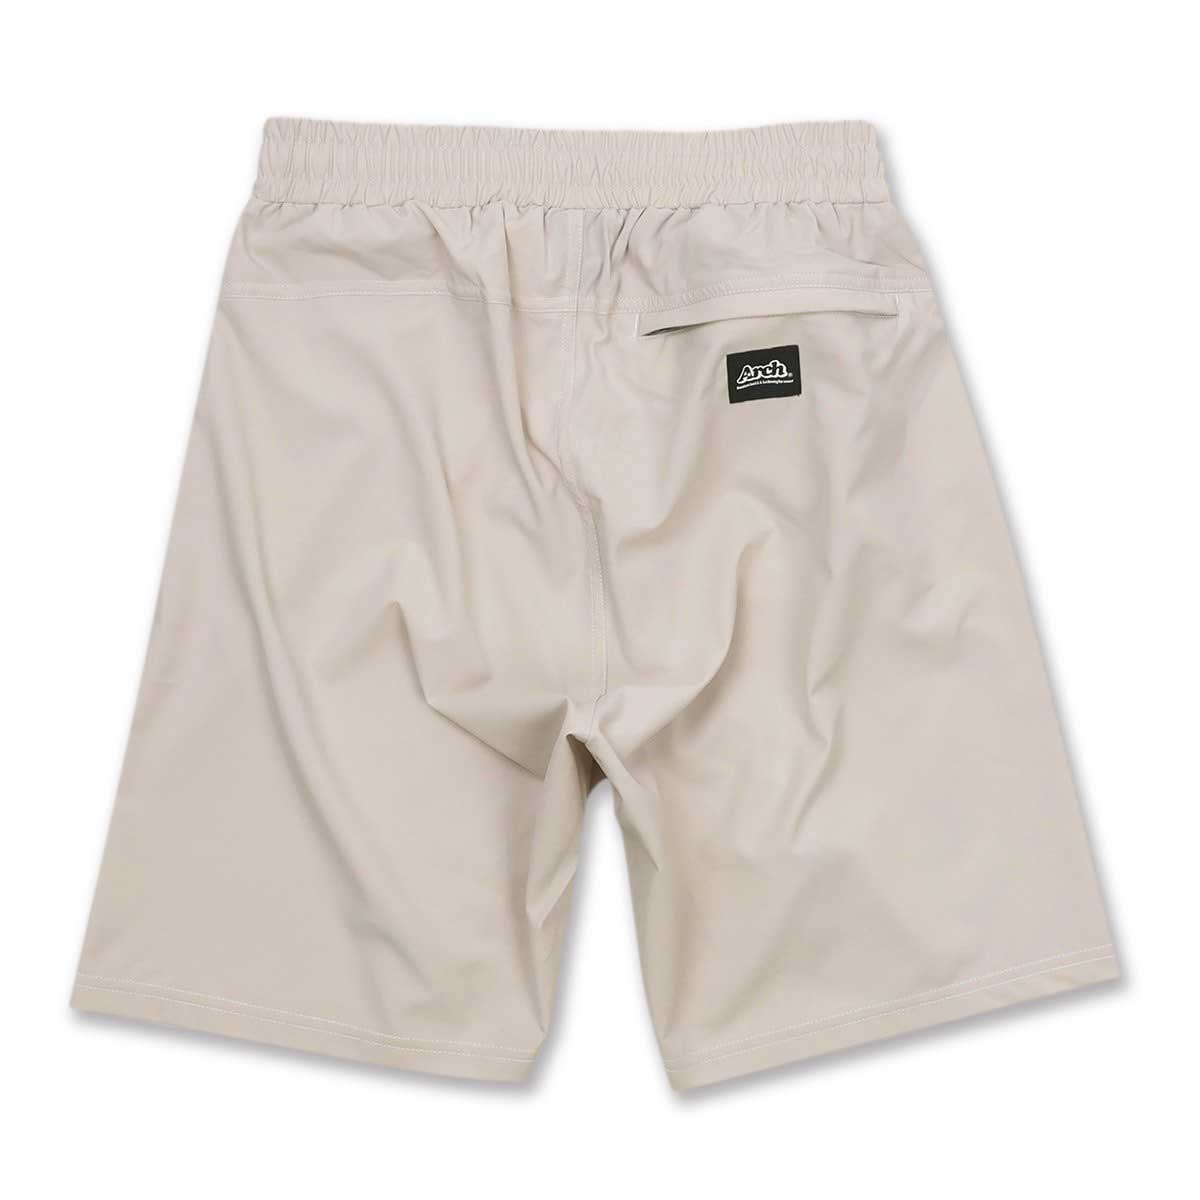 新品未使用 Arch アーチ B122-108 solid color shorts バスケットウェア バスケットパンツ バスパン  joanafrancisco.com